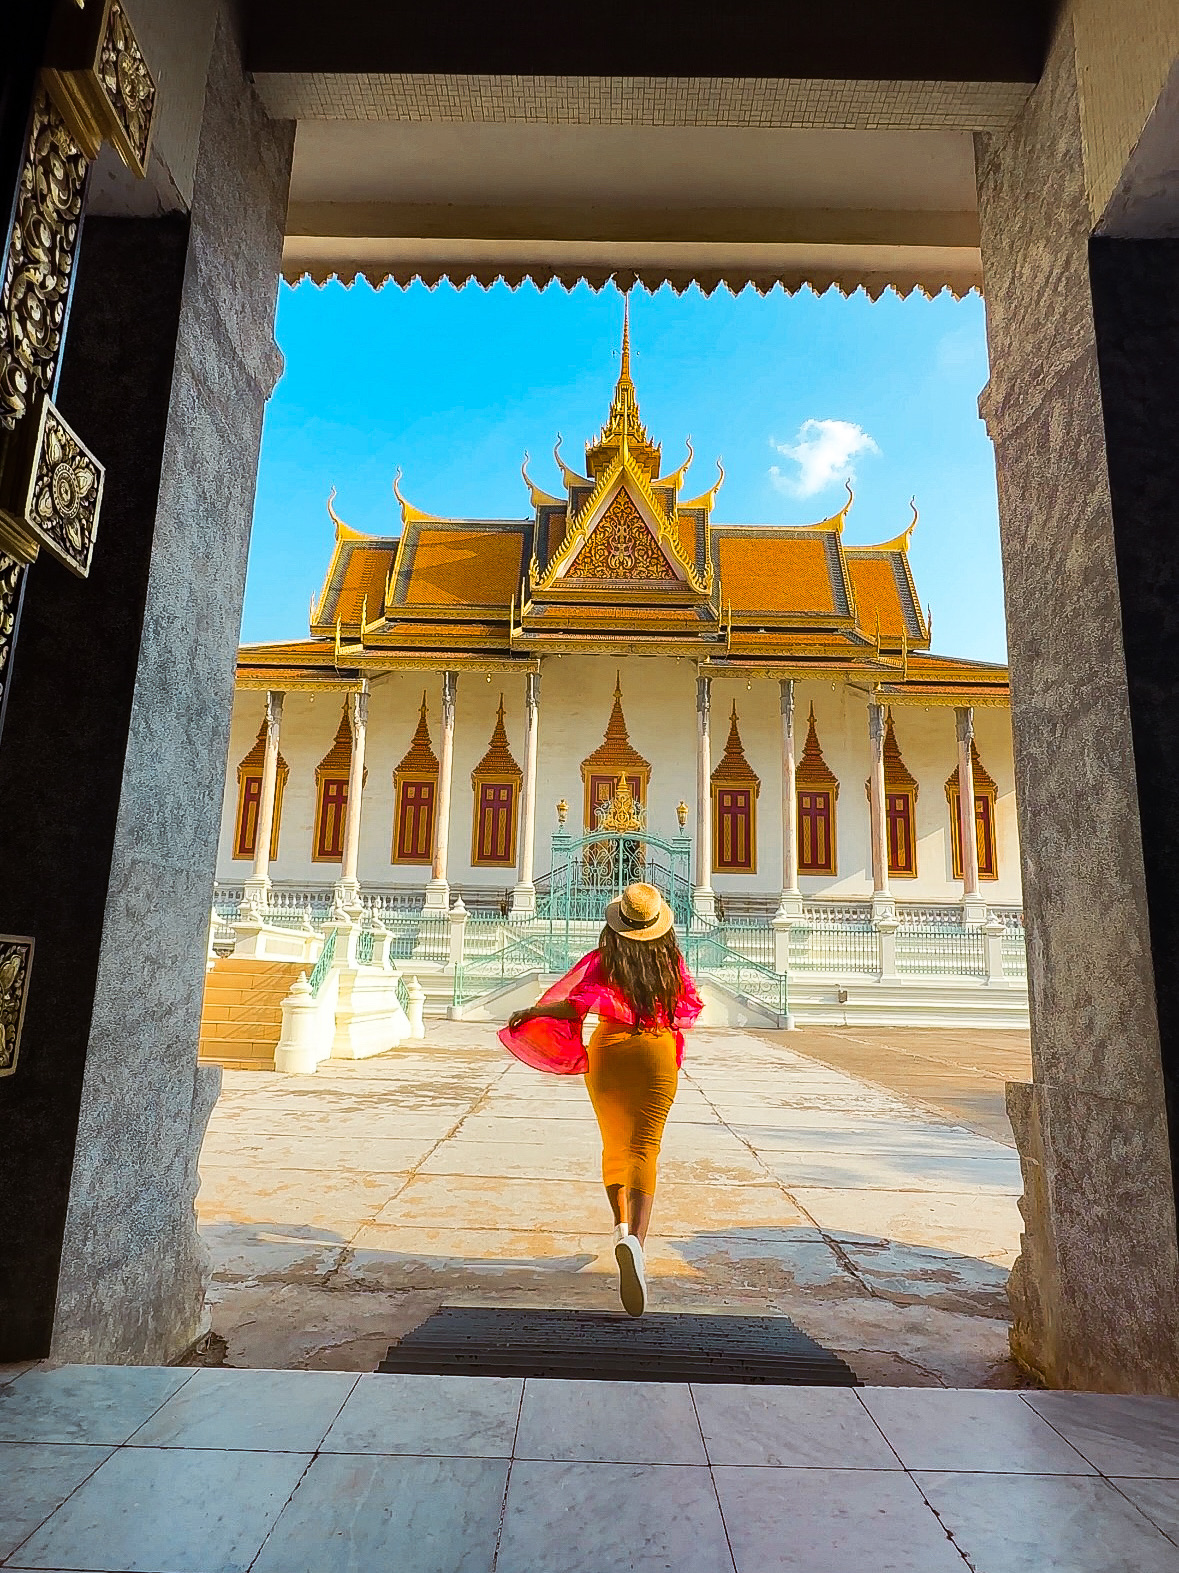 感觉像柬埔寨公主在金边